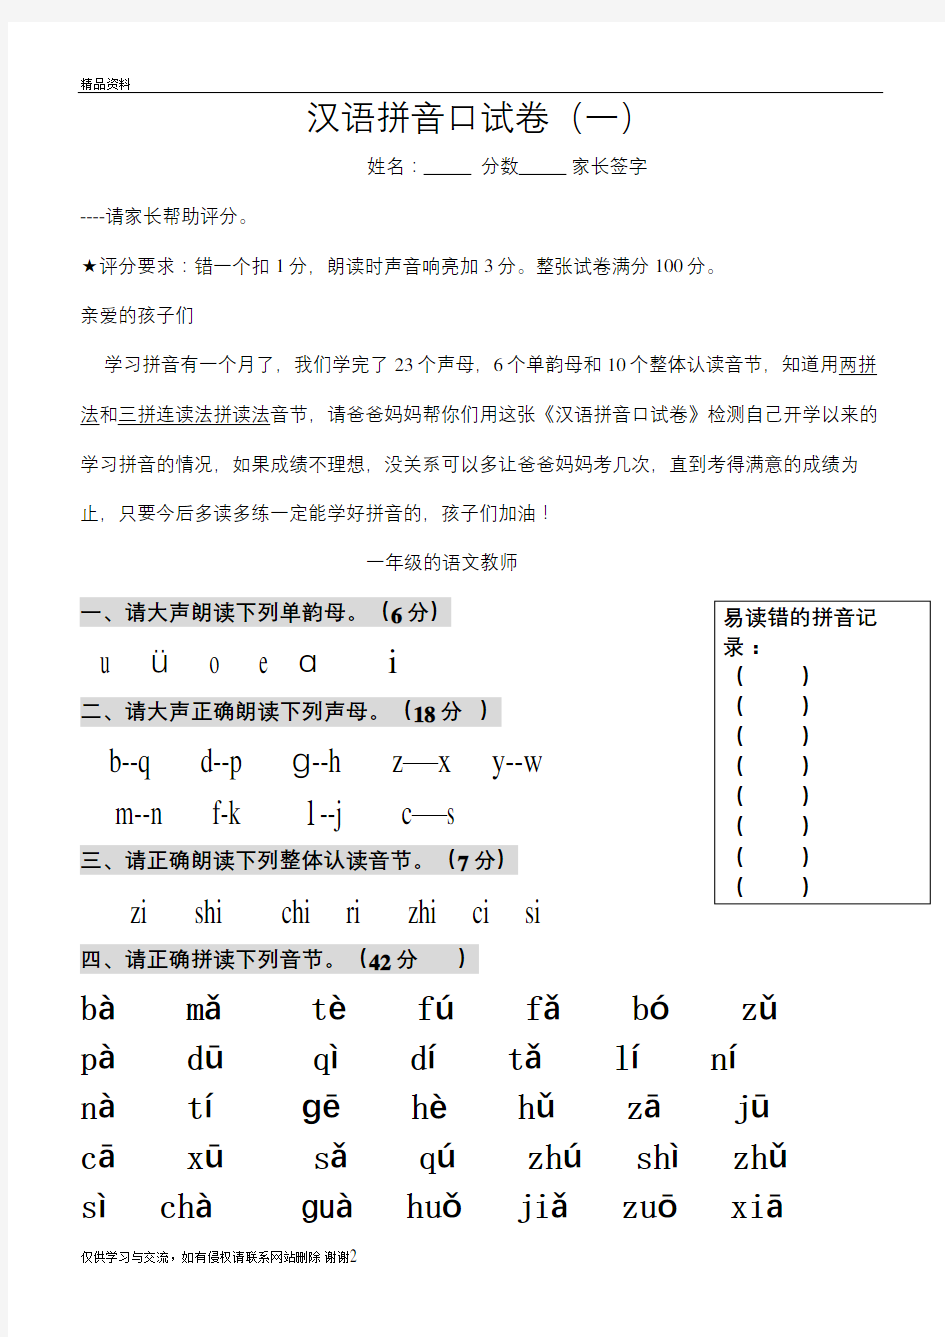 一年级汉语拼音口试卷教学文案